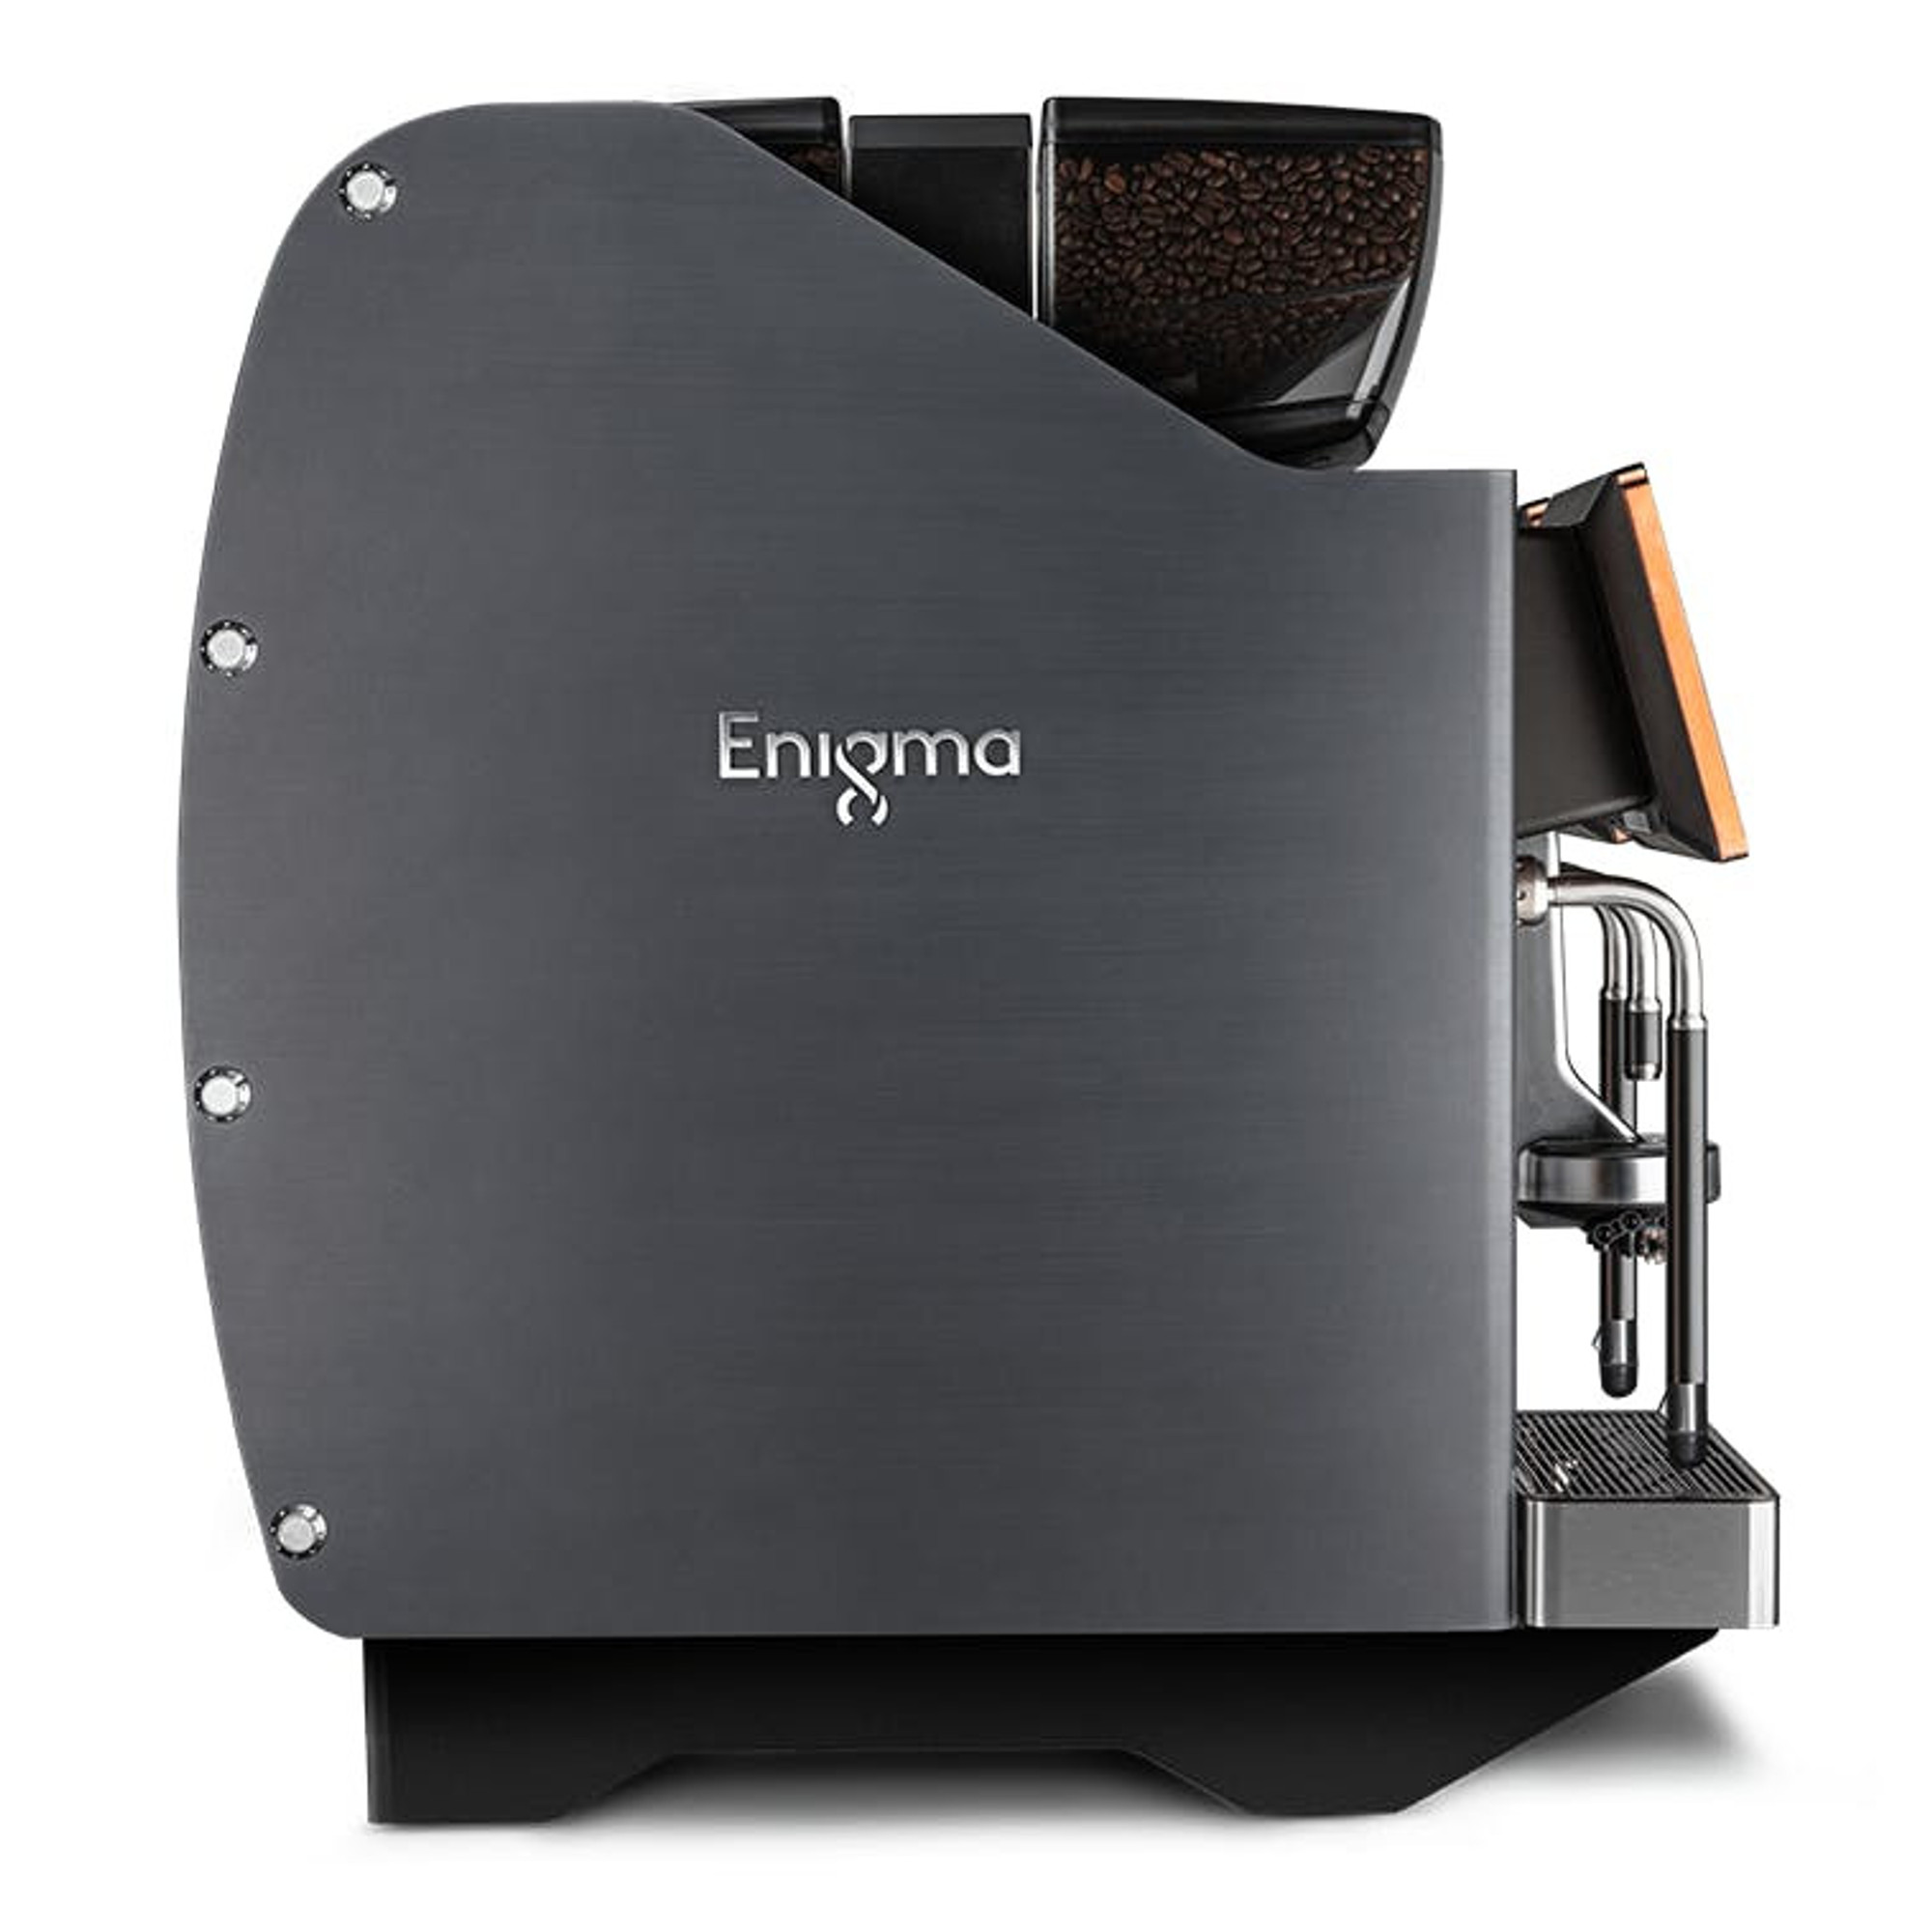 Eversys E'4s/Classic - Super Automatic Espresso Machine